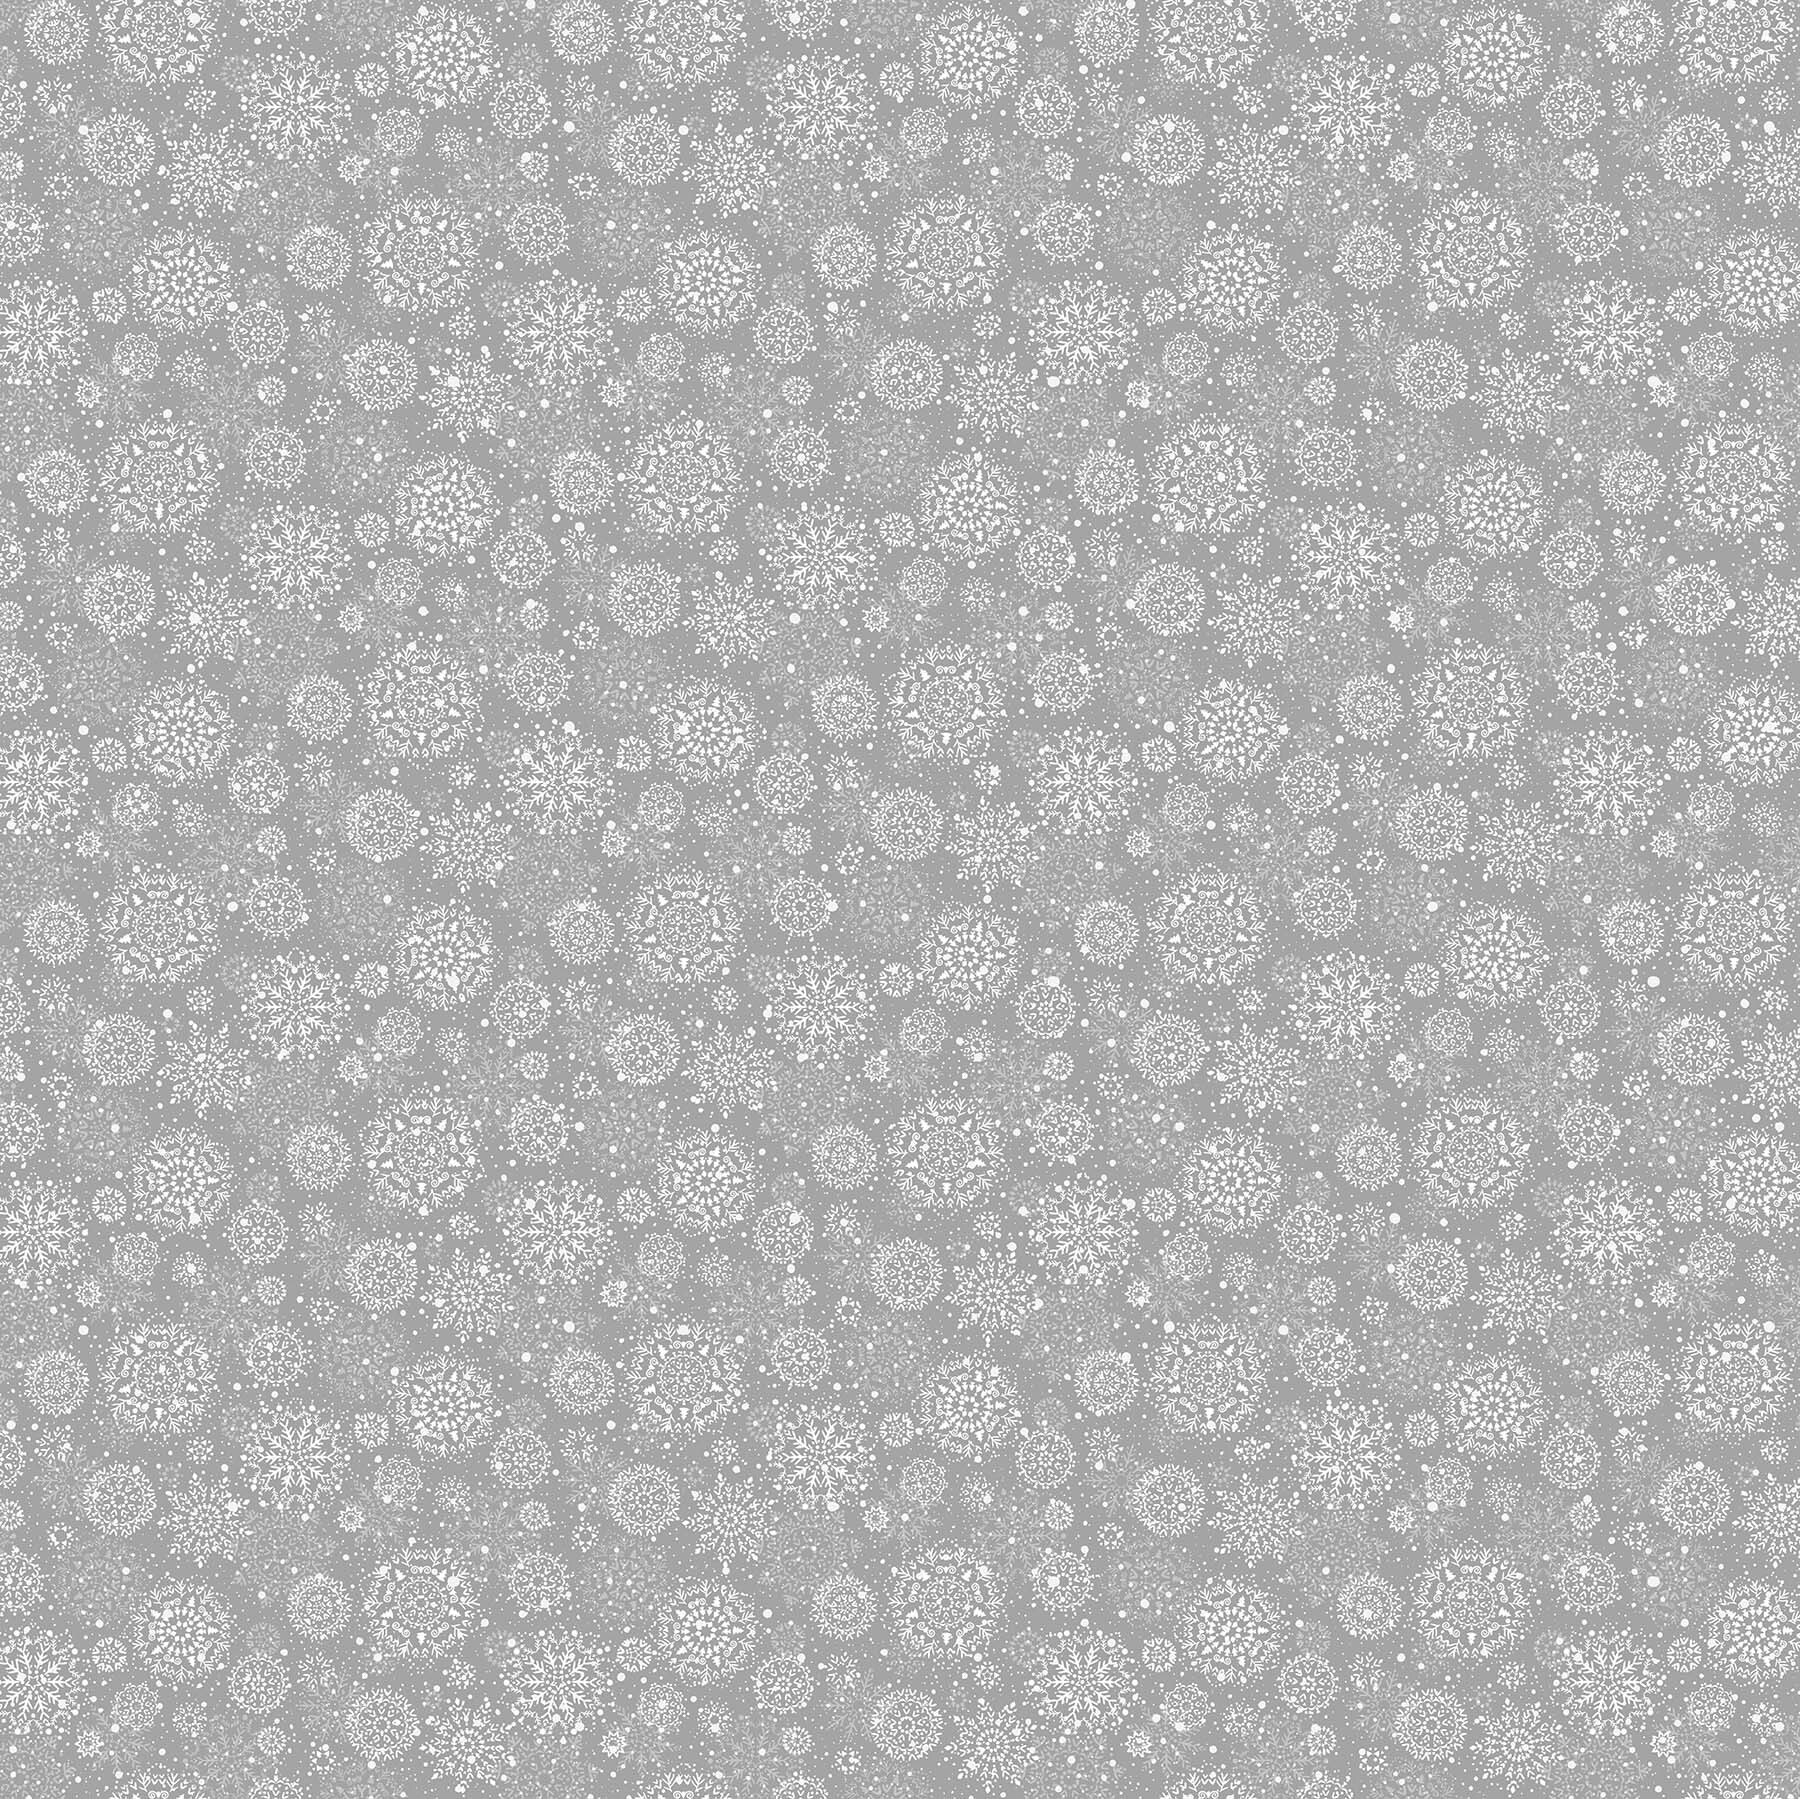 Enchanted - Grey Snowflakes - 1/2m cut 58757